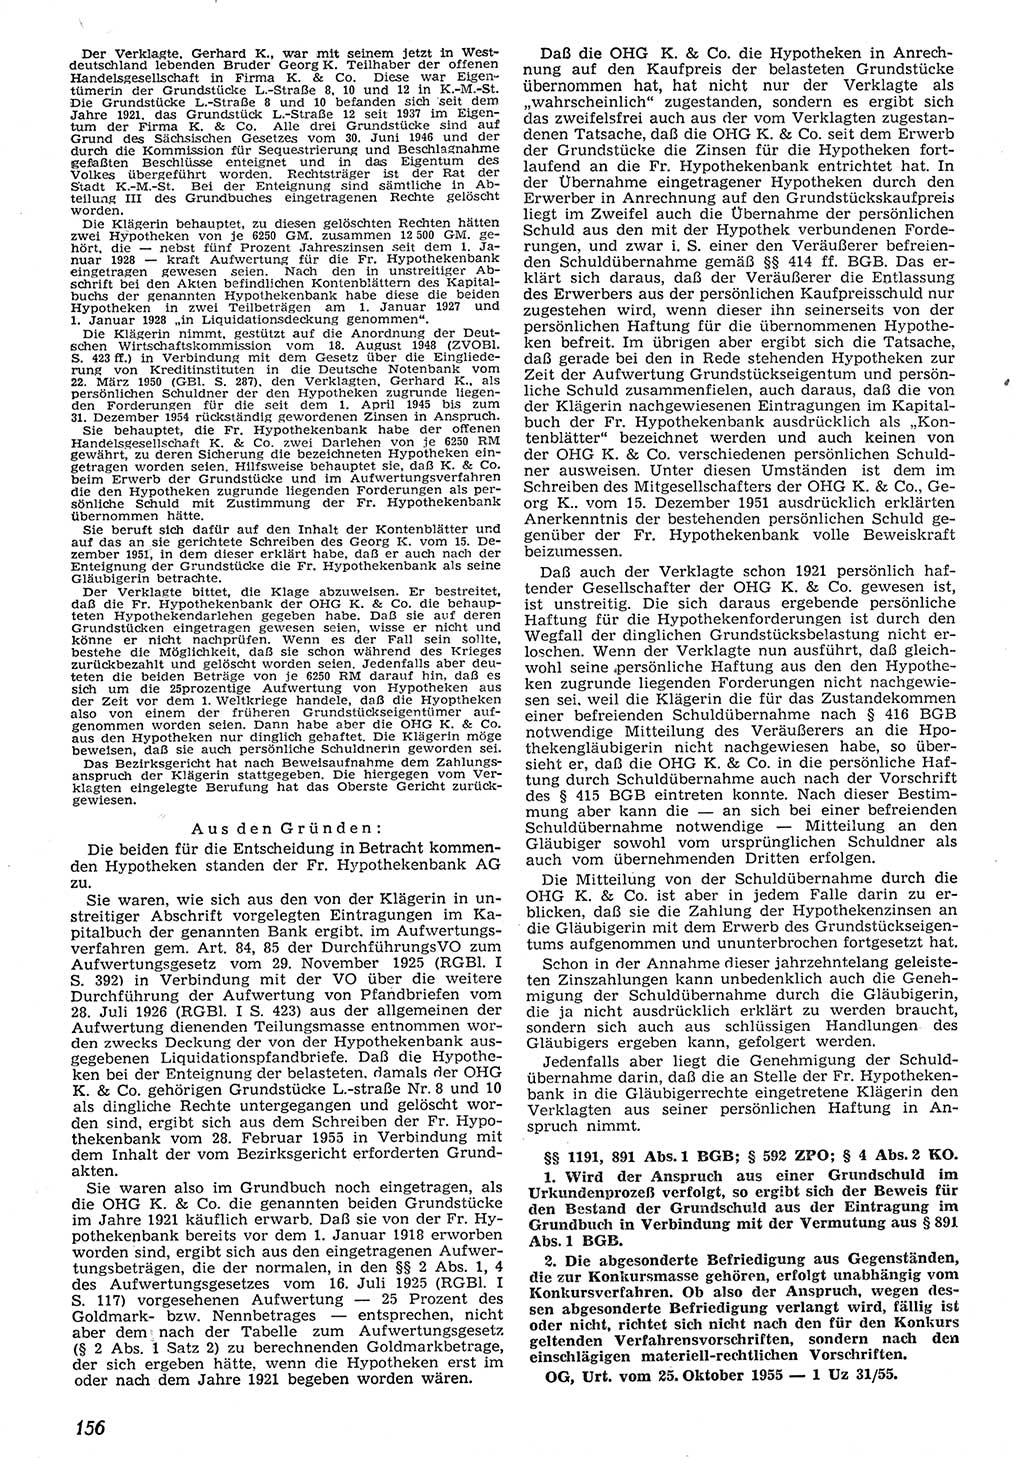 Neue Justiz (NJ), Zeitschrift für Recht und Rechtswissenschaft [Deutsche Demokratische Republik (DDR)], 10. Jahrgang 1956, Seite 156 (NJ DDR 1956, S. 156)